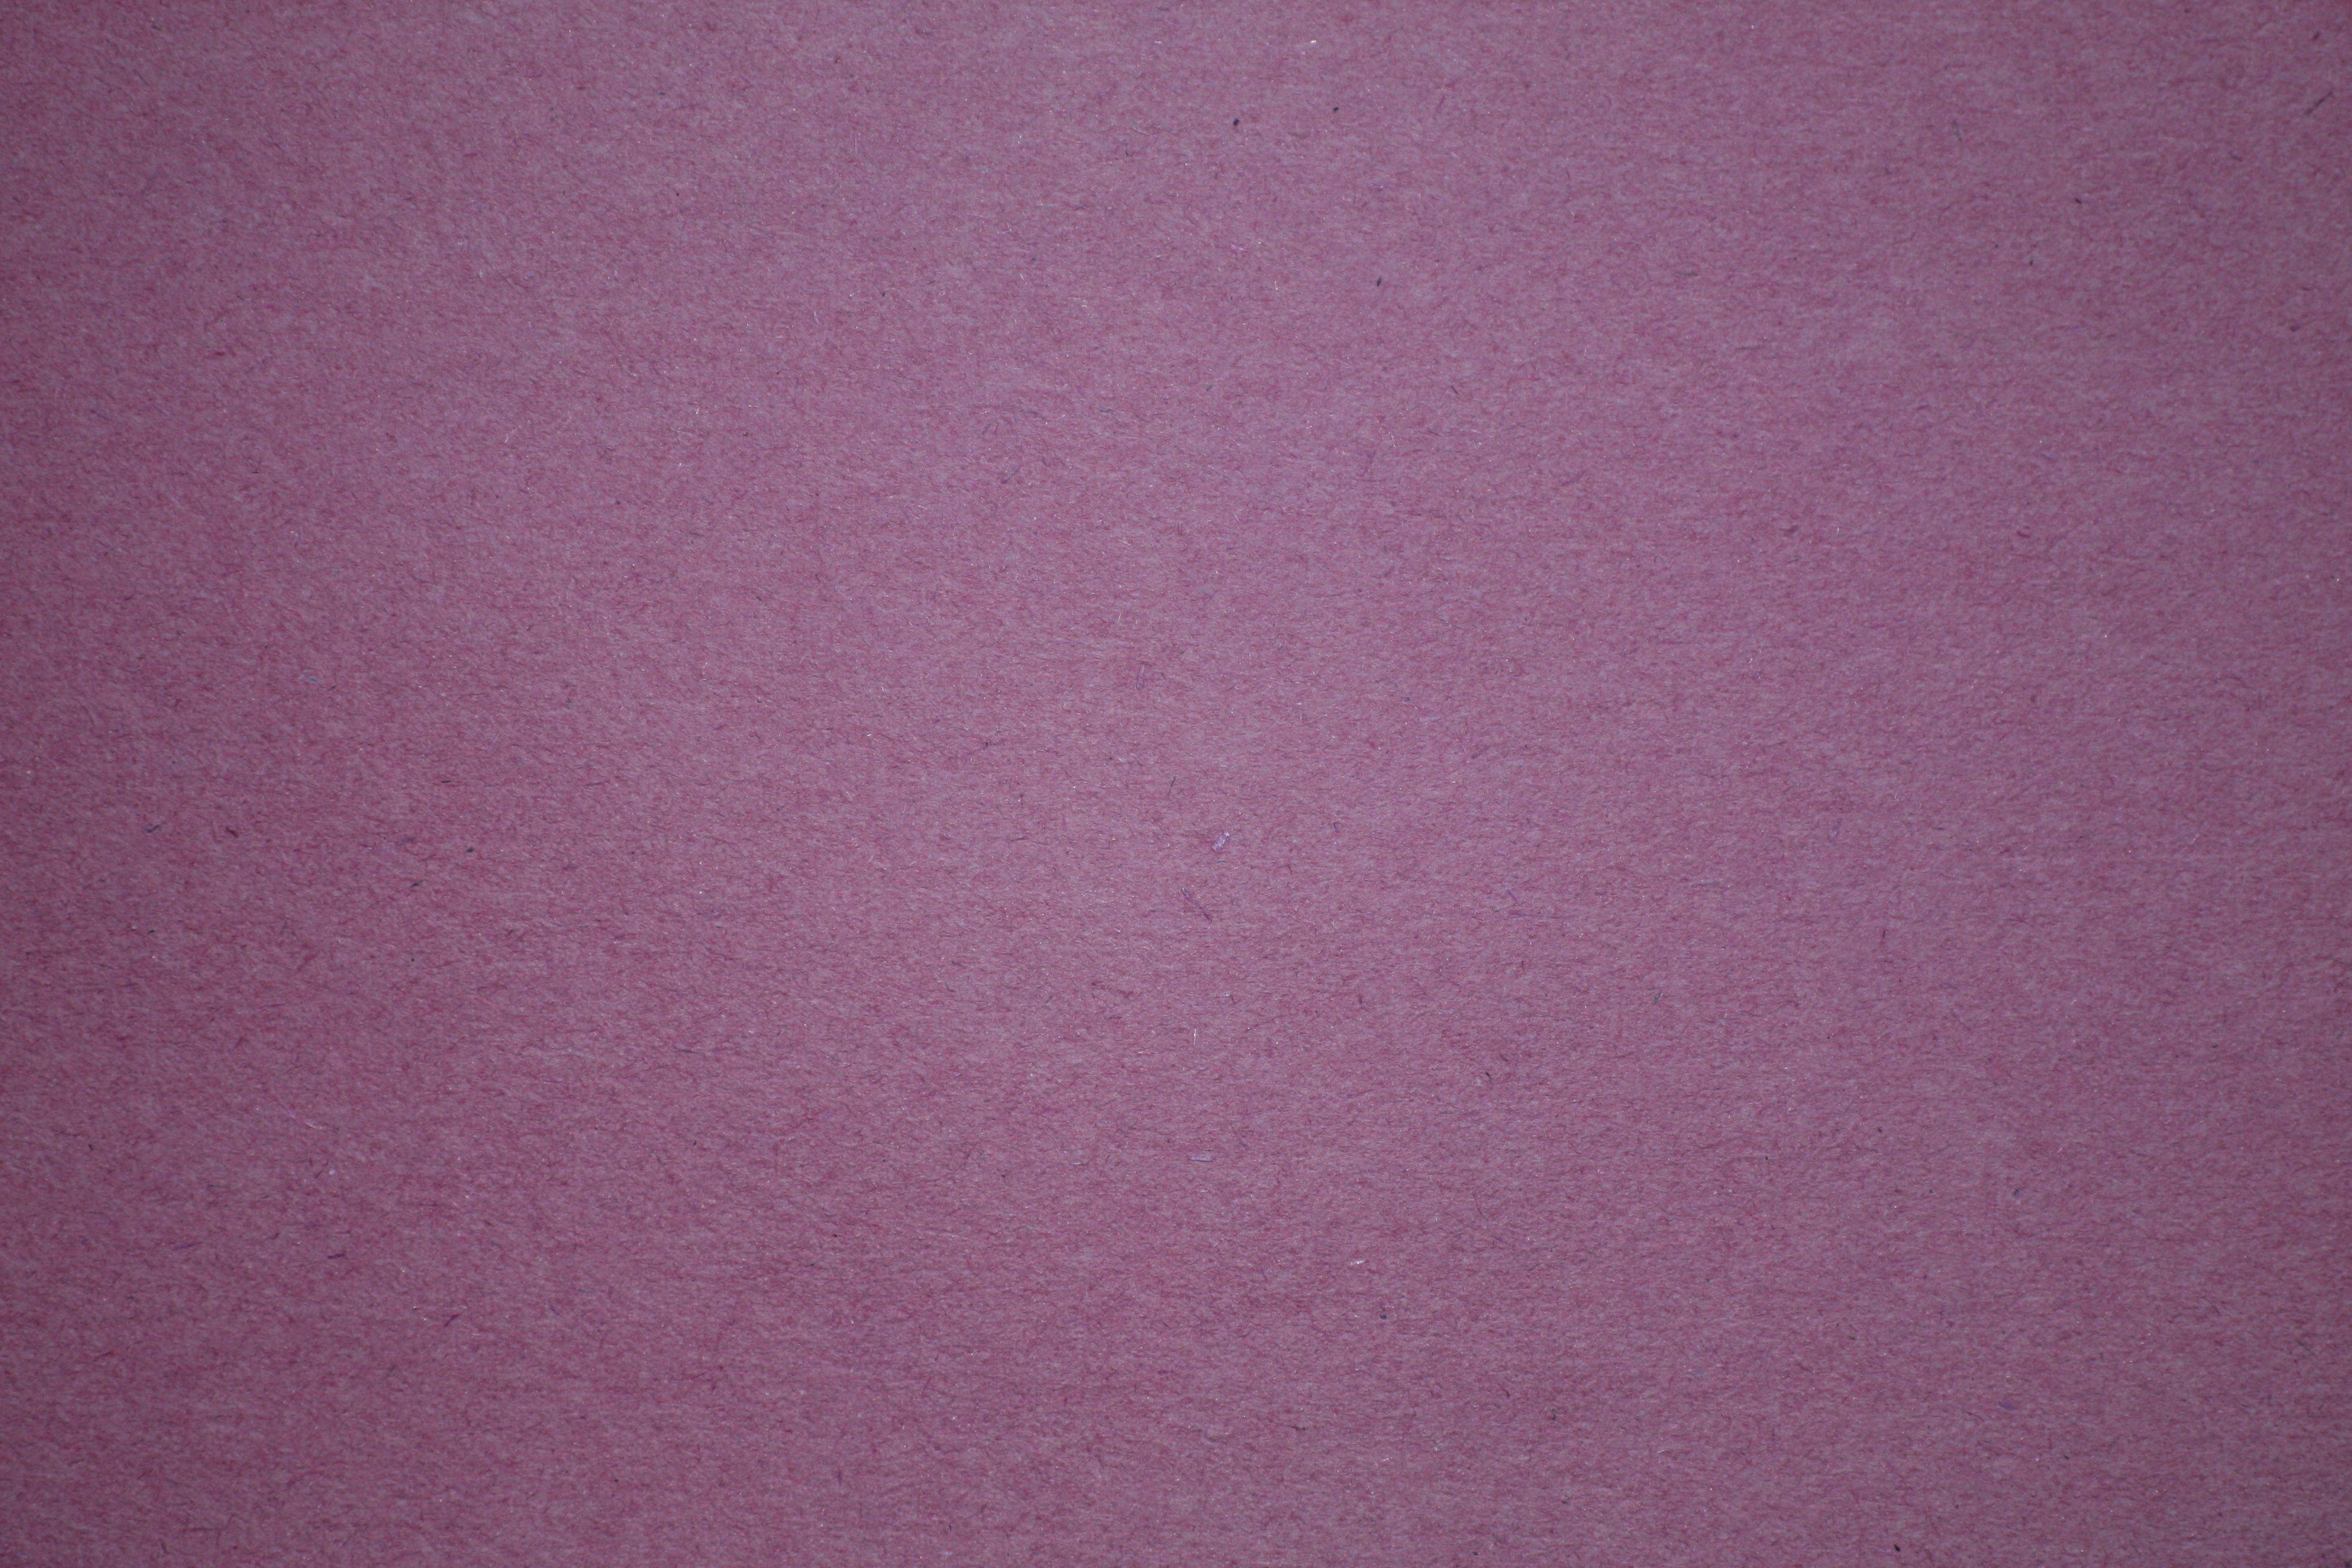 Purple Construction Paper Texture | Centering book | Pinterest ...